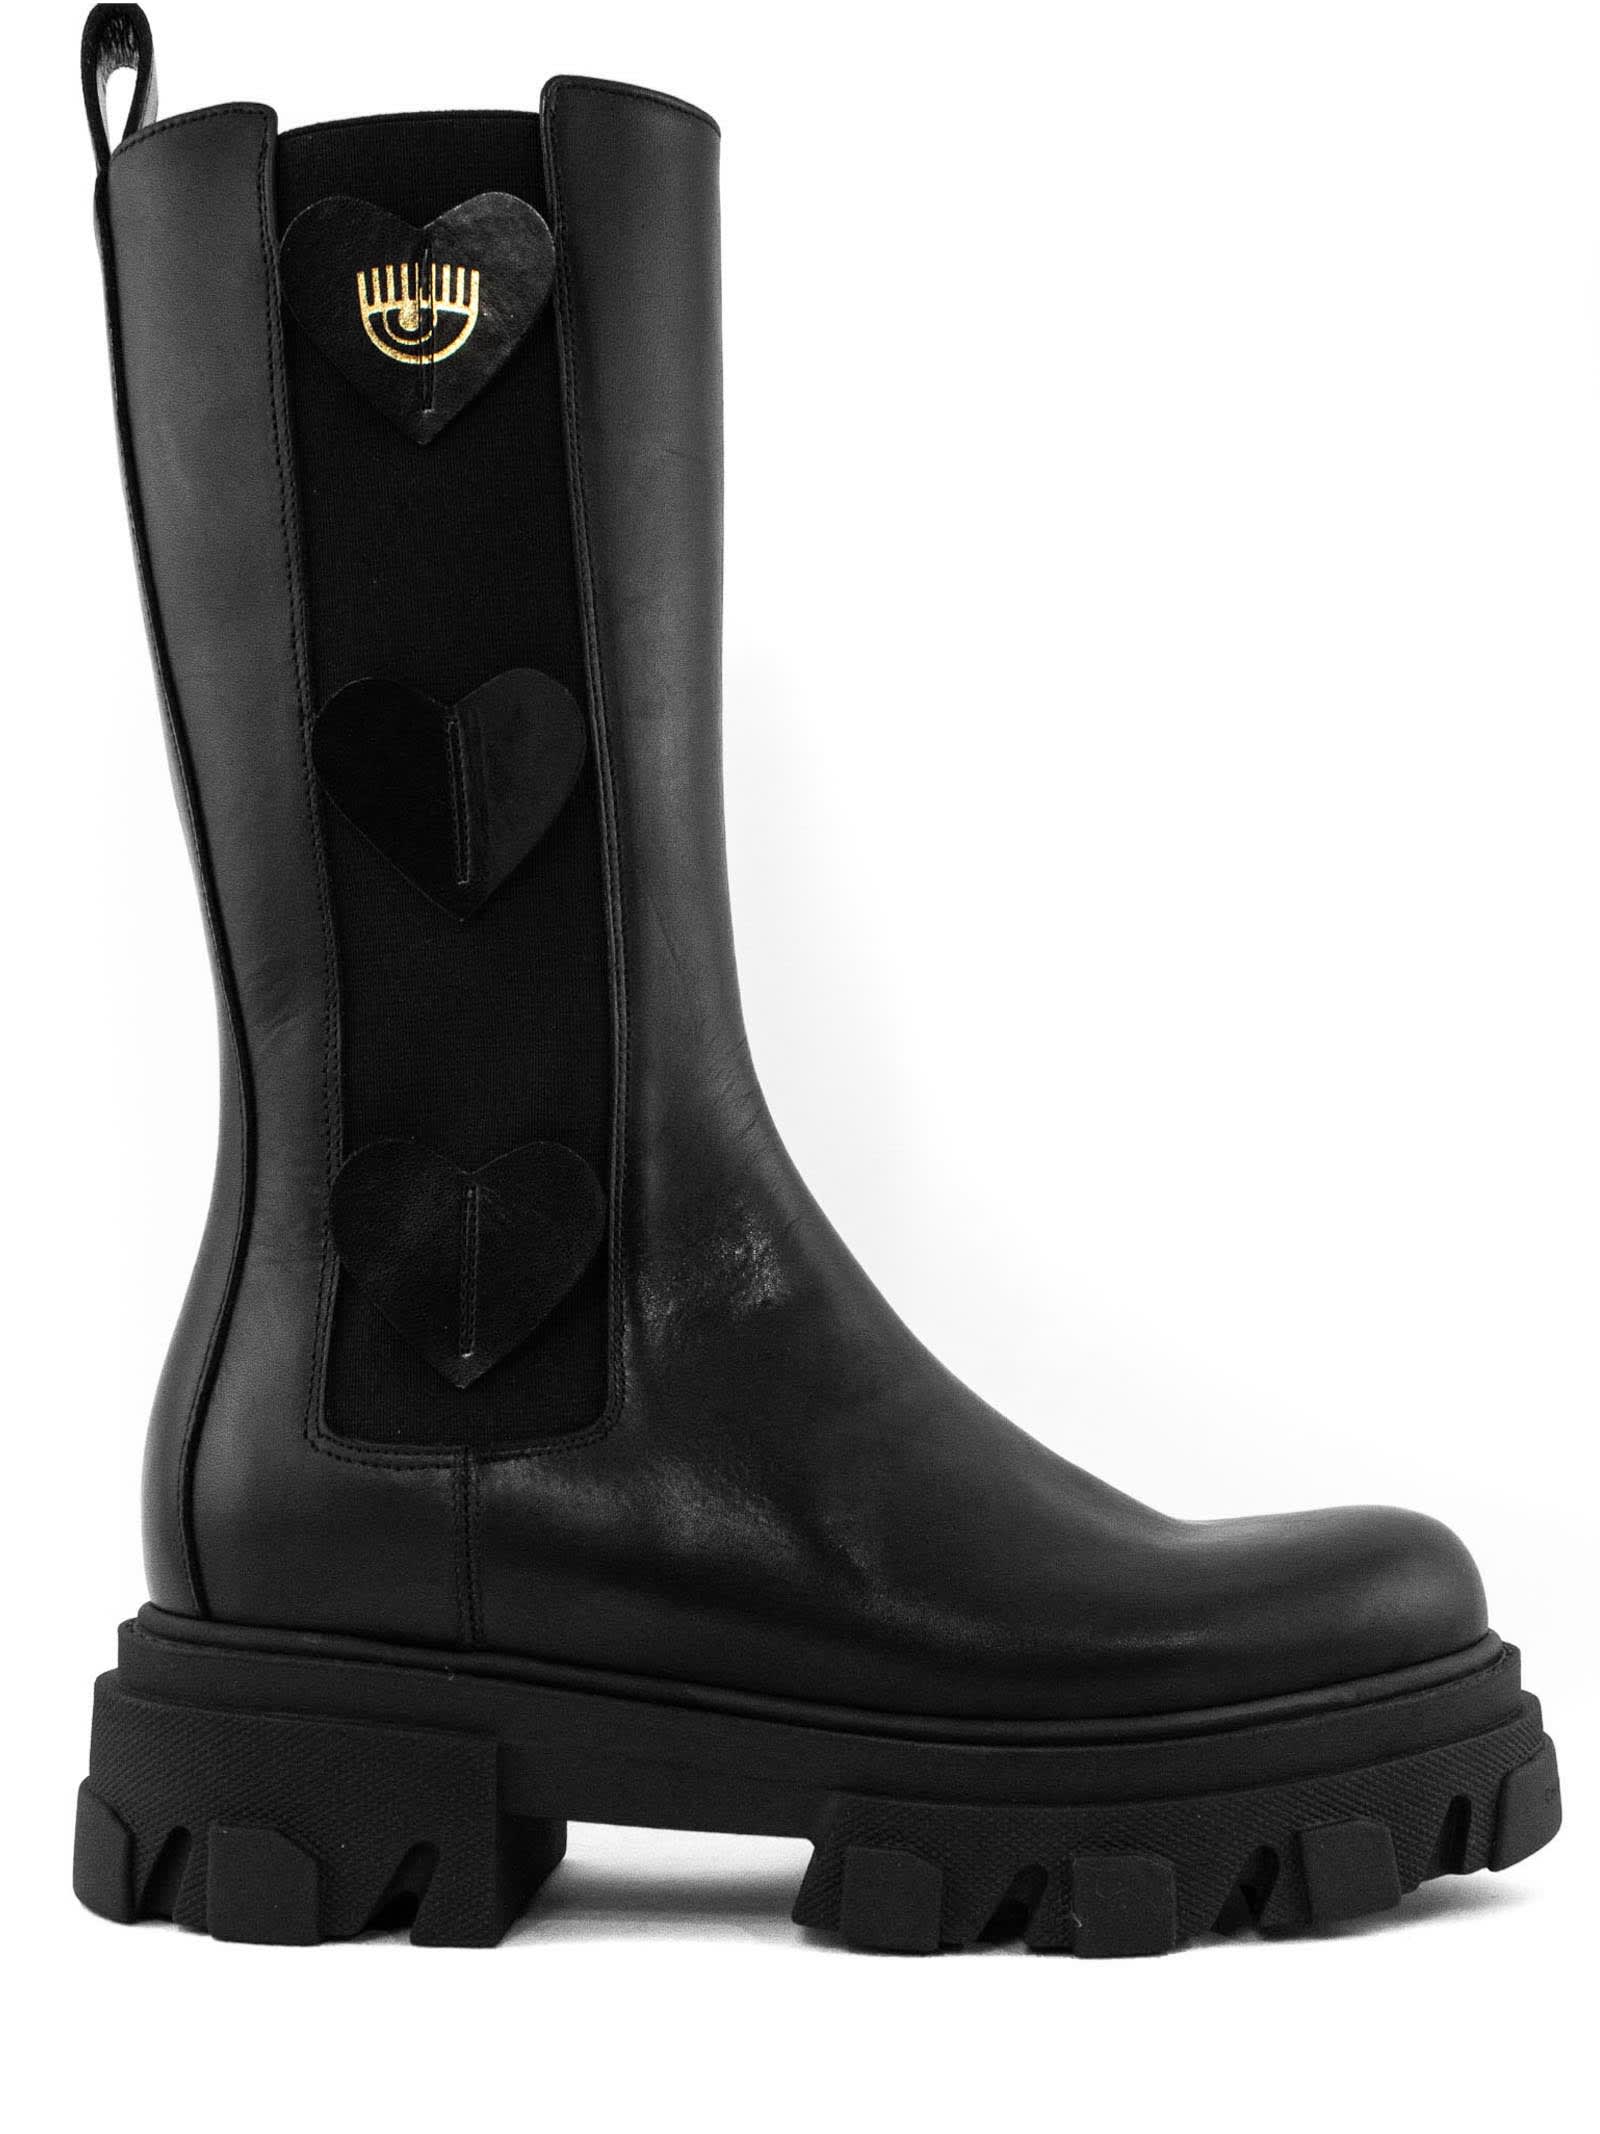 Chiara Ferragni Black Leather Boot